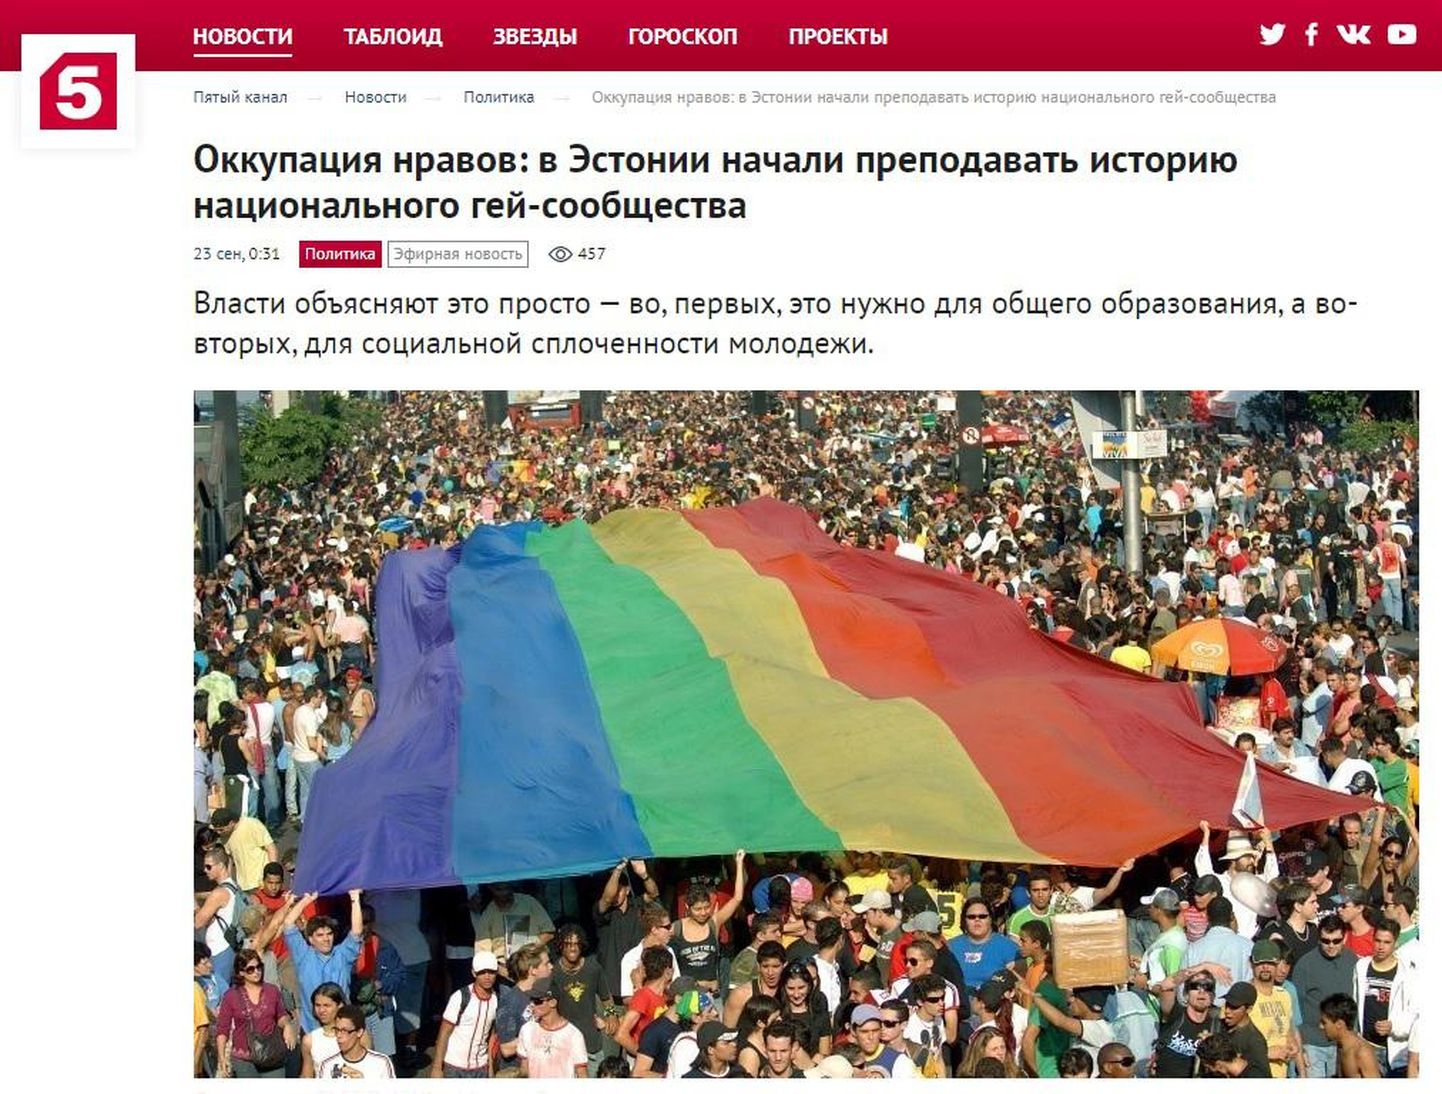 Кроме телесюжета на сайте "Пятого канала" была опубликована статья, в которой также заявлялось, что в Таллиннском университете учат гей-сексу.